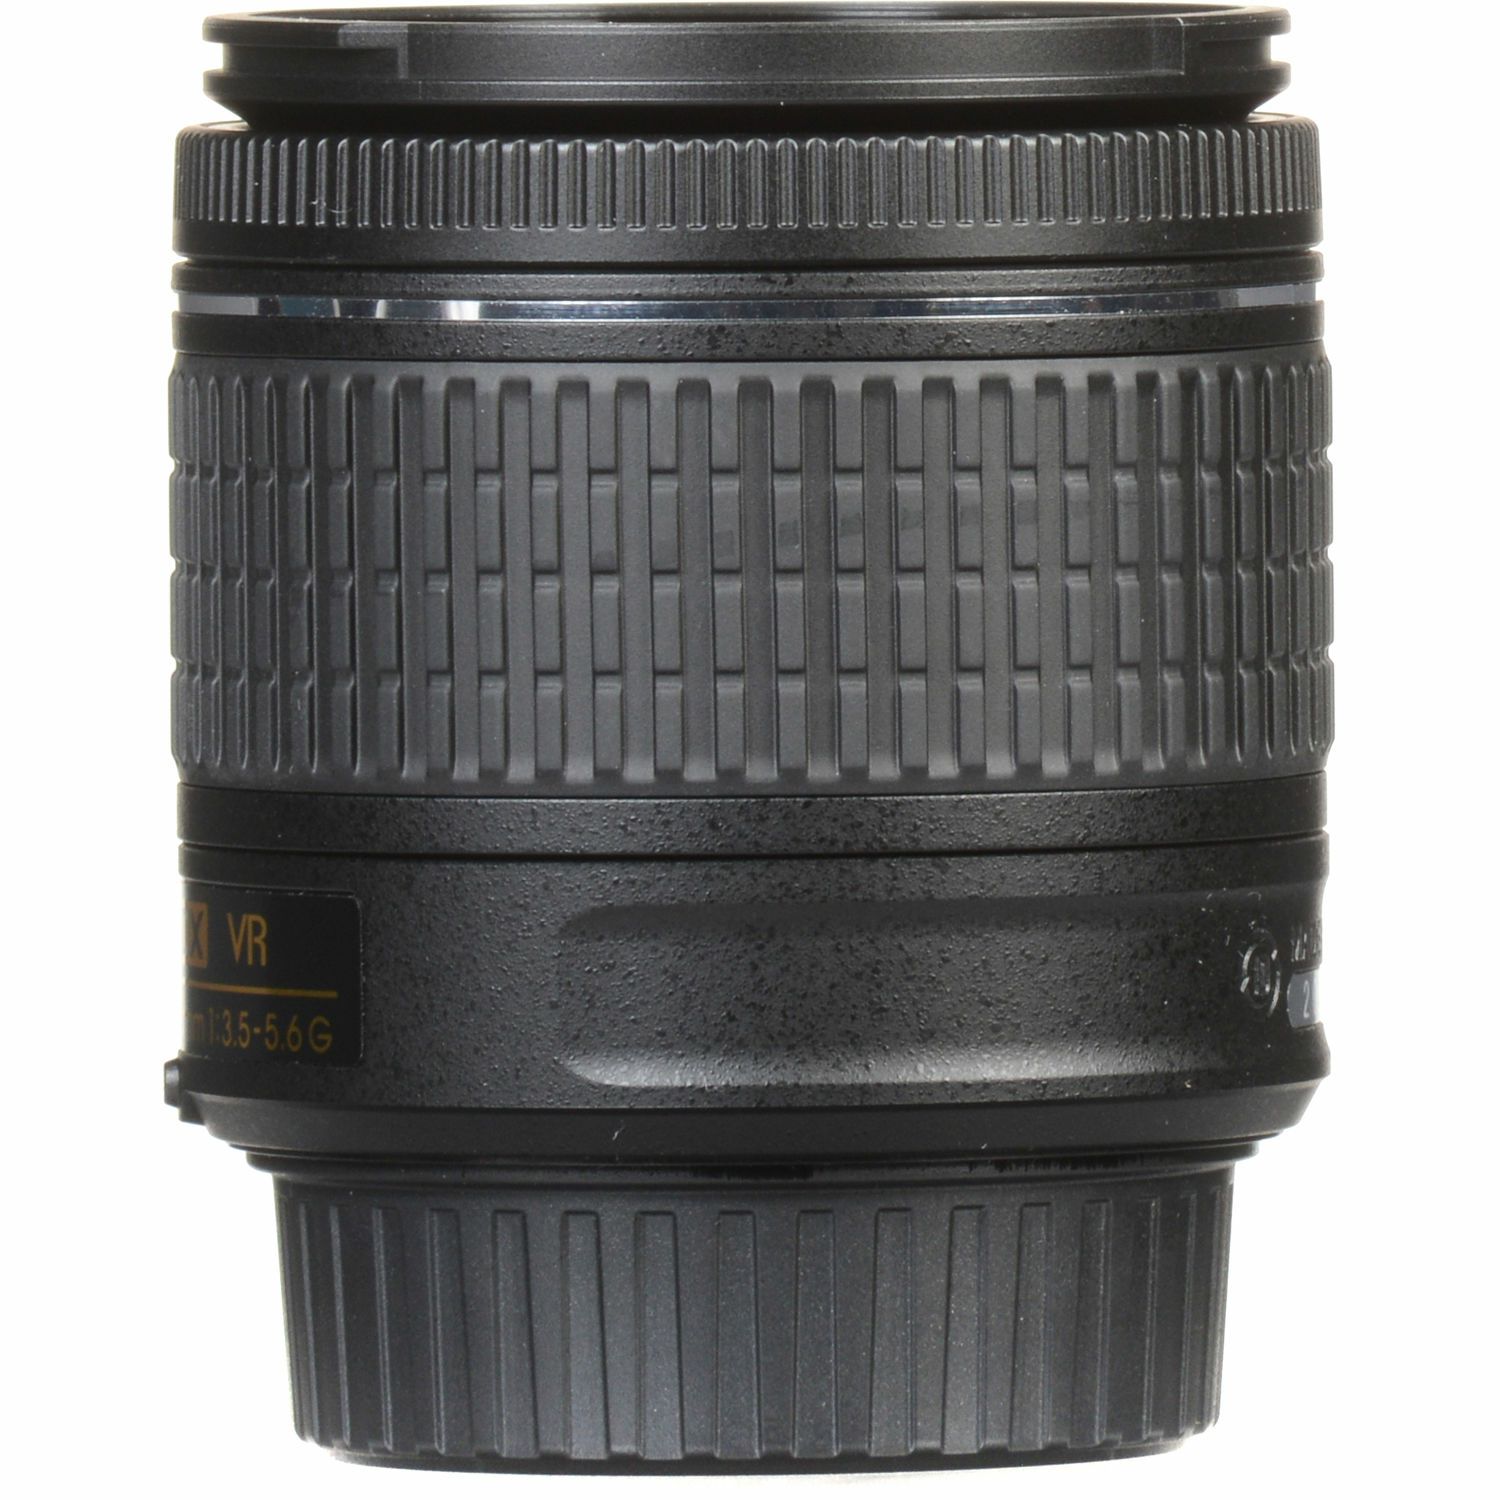 Nikon D5600 + AF-P 18-55 VR + AF-P 70-300 VR DX KIT DSLR Digitalni fotoaparat Camera with 18-55mm f/3.5-5.6 70-300mm lens (VBA500K004)